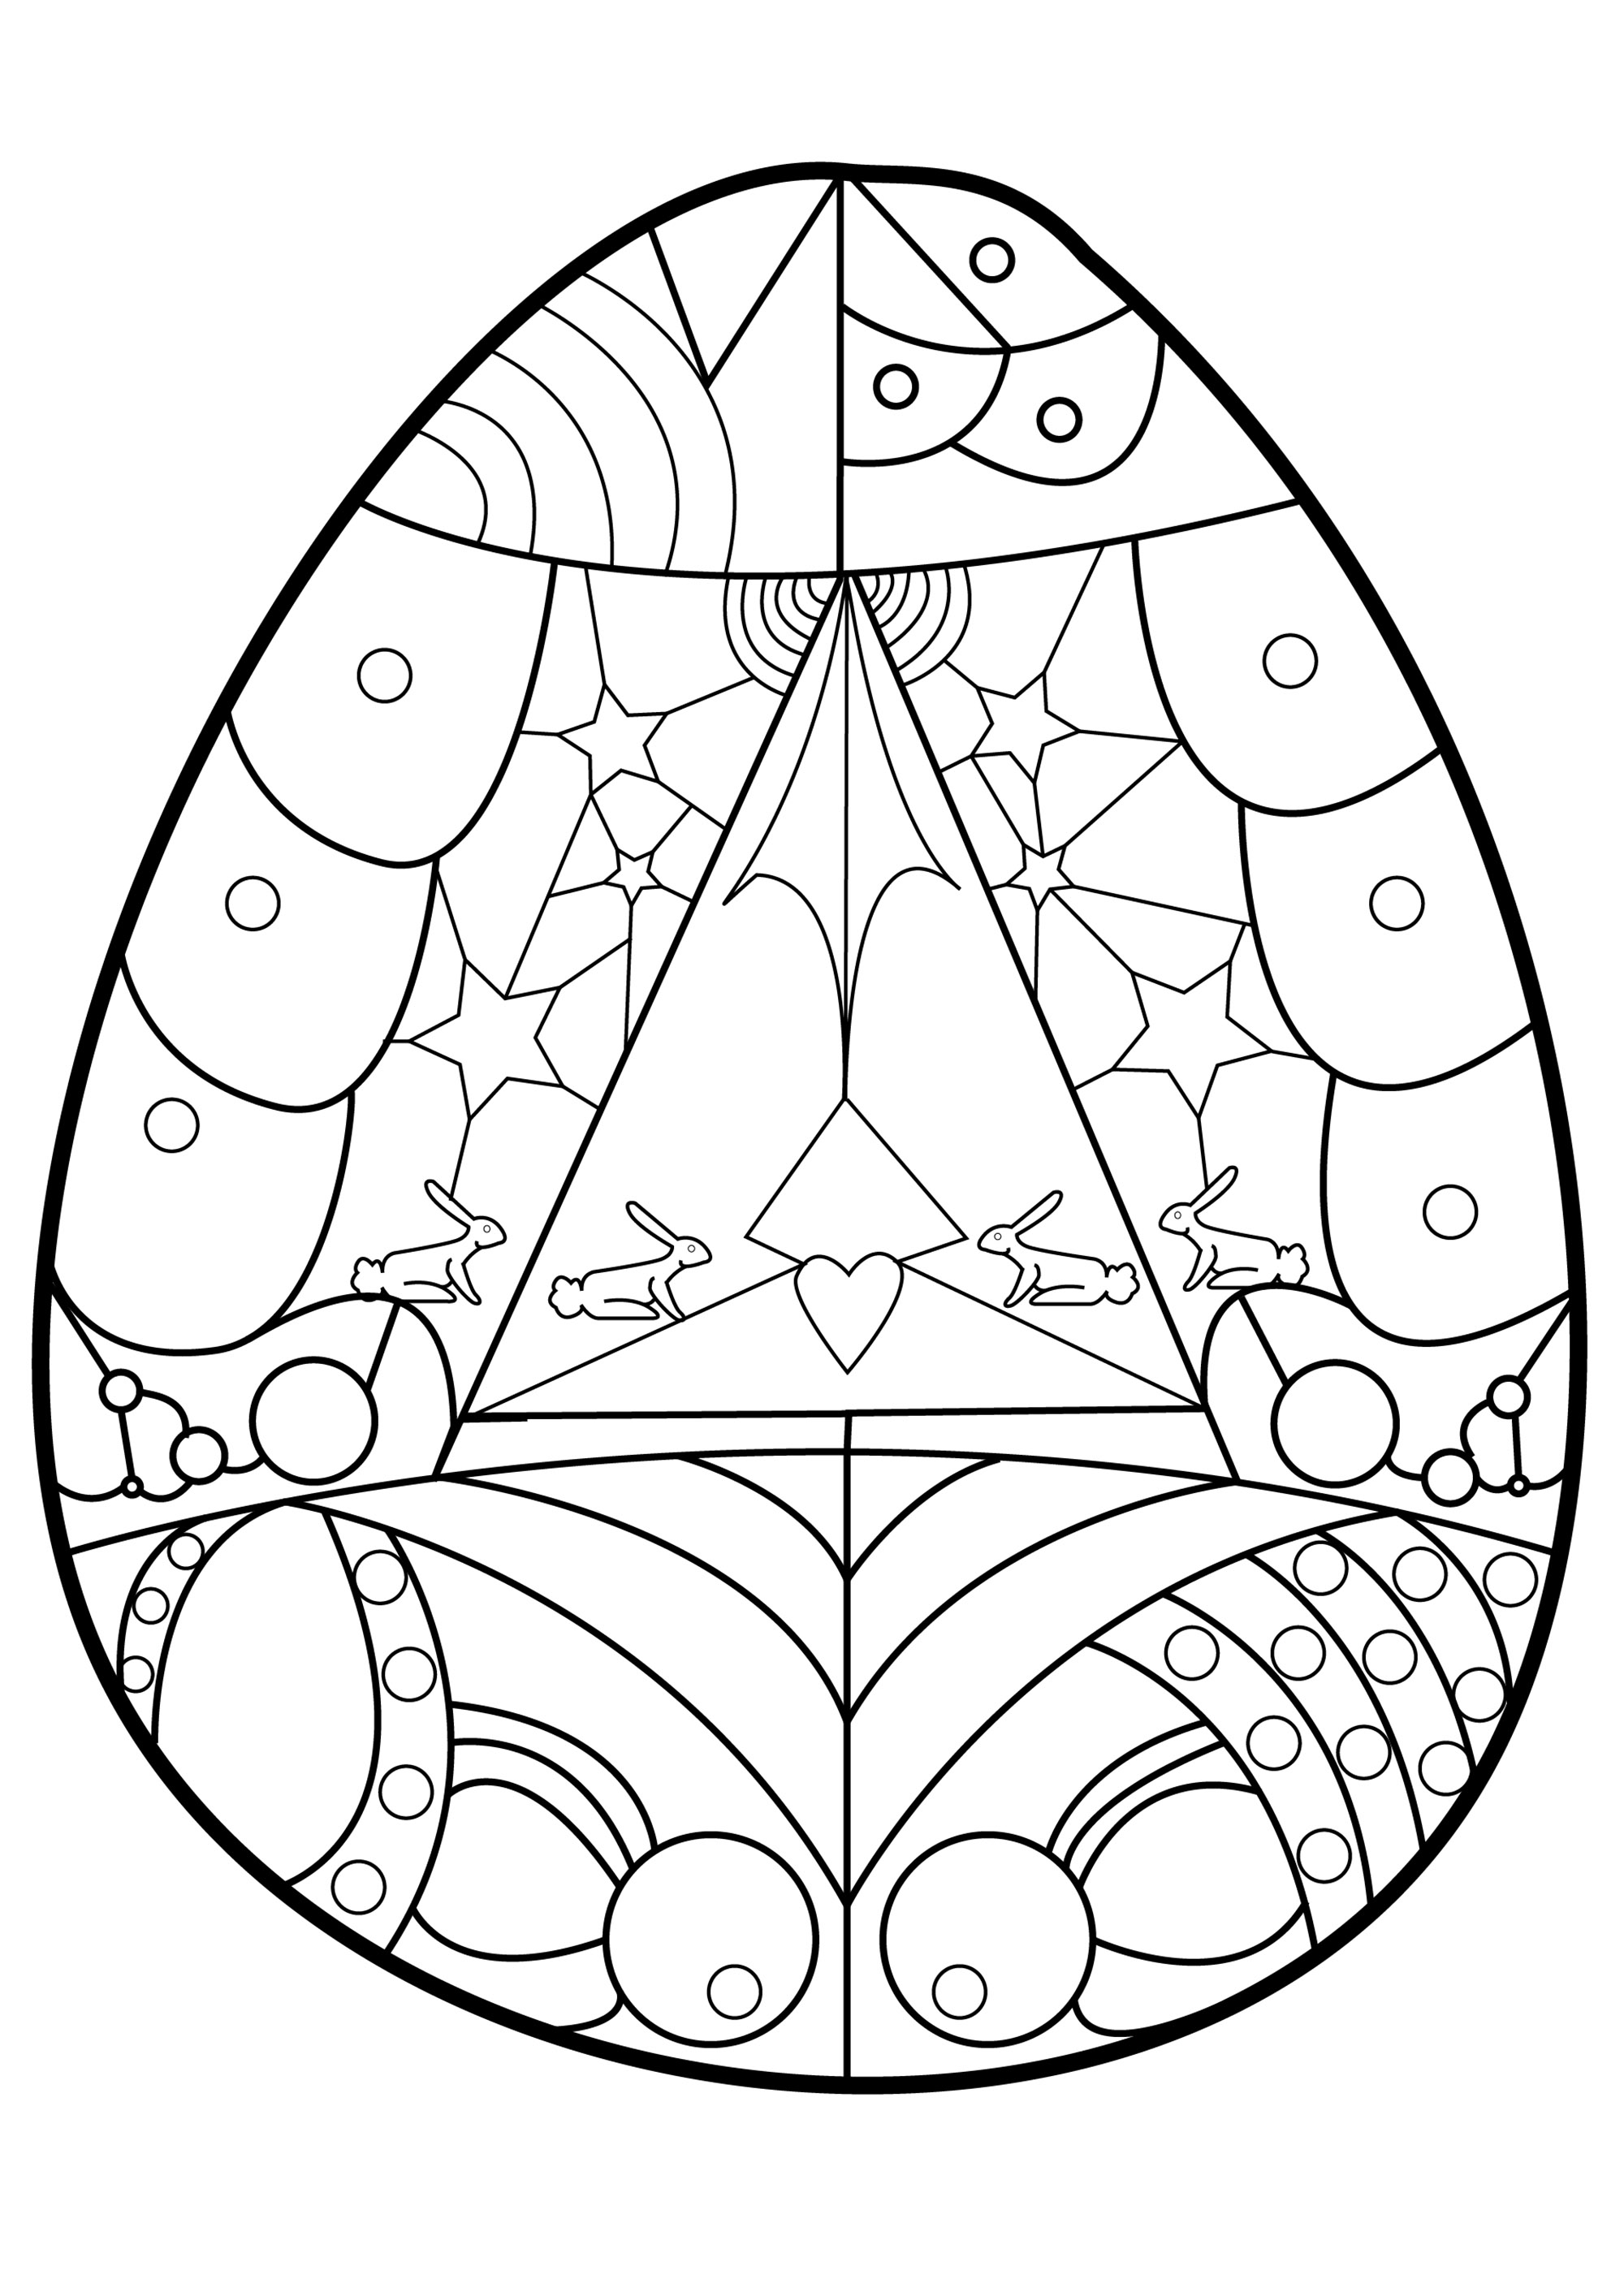 Varias formas geométricas y dibujos para colorear en este bonito huevo de Pascua